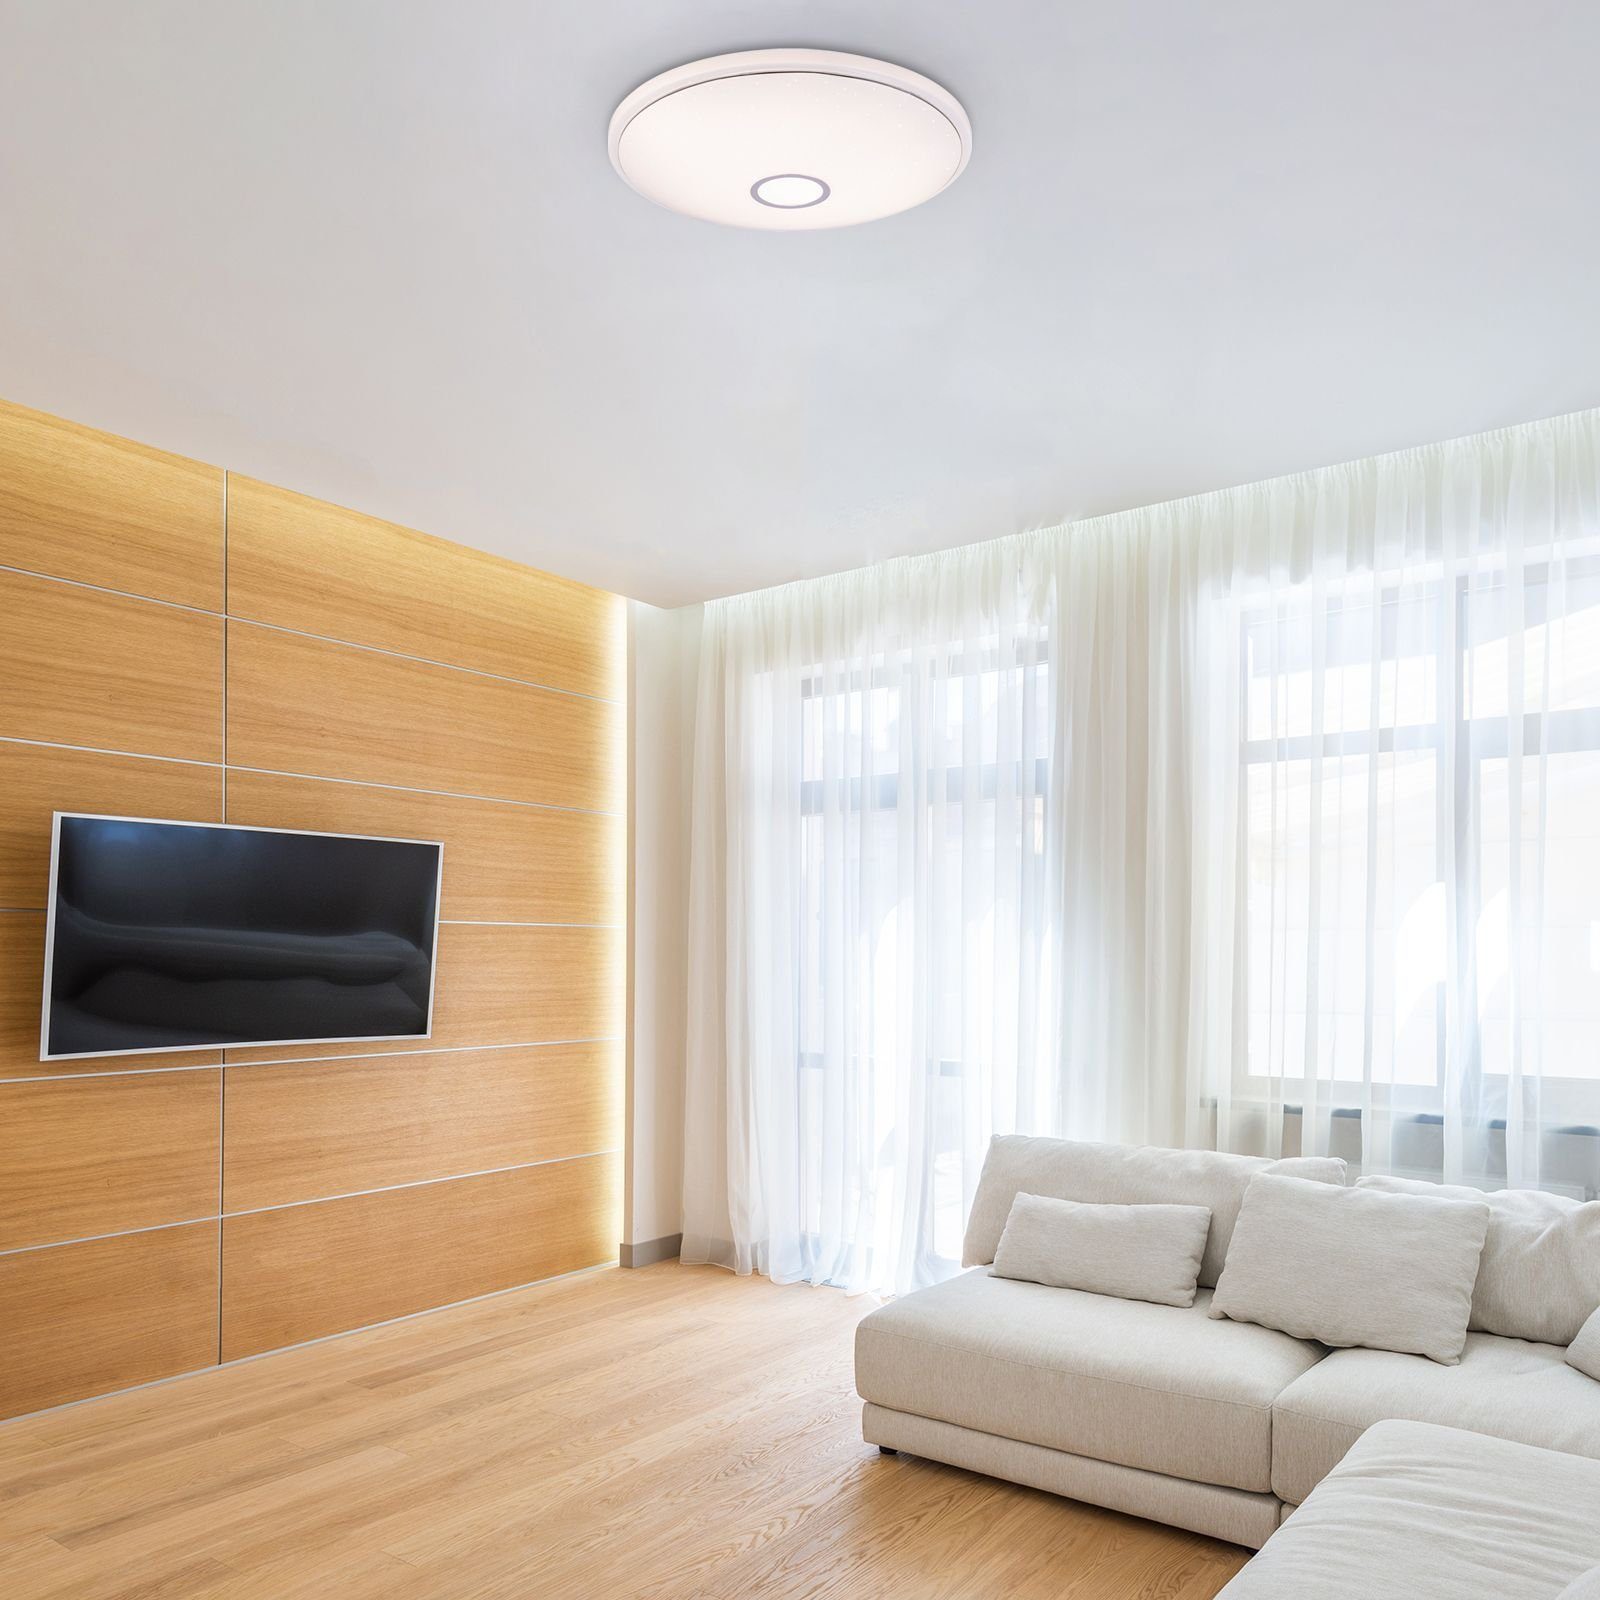 Deckenlampe Deckenleuchte Deckenleuchte dimmbar Wohnzimmer Fernbedienung LED Globo GLOBO